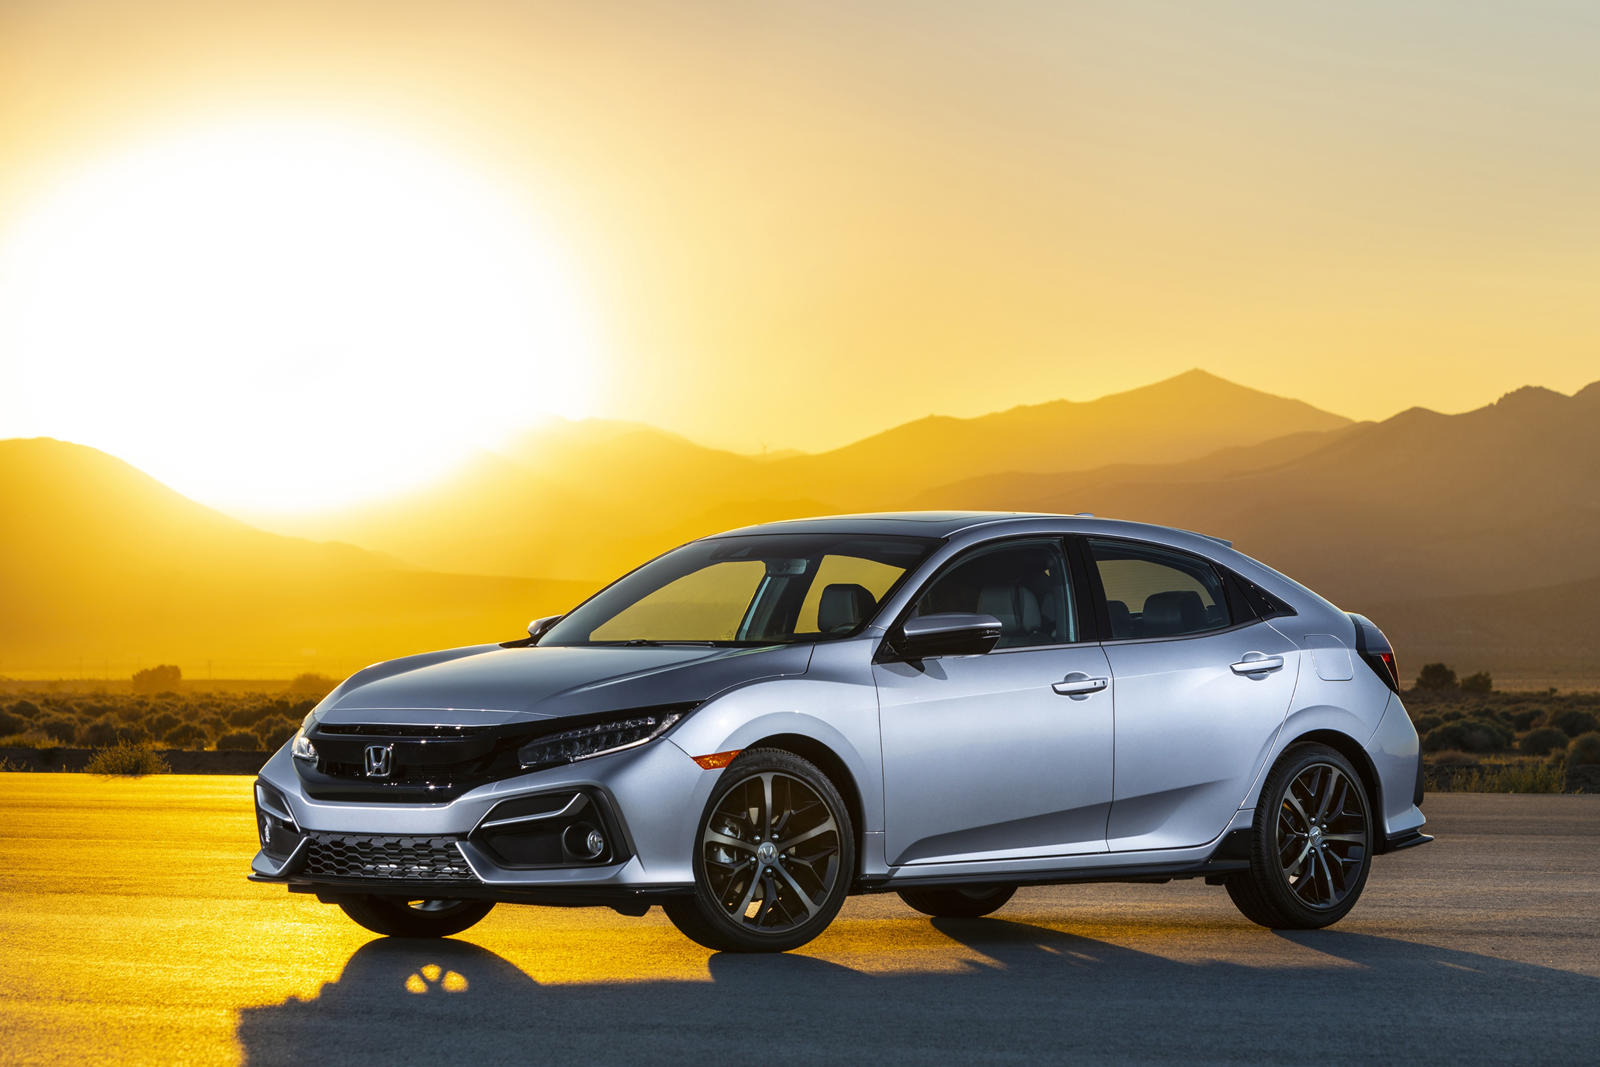 2021 Honda Civic Hatchback Review, Trims, Specs, Price, New Interior Features, Exterior Design